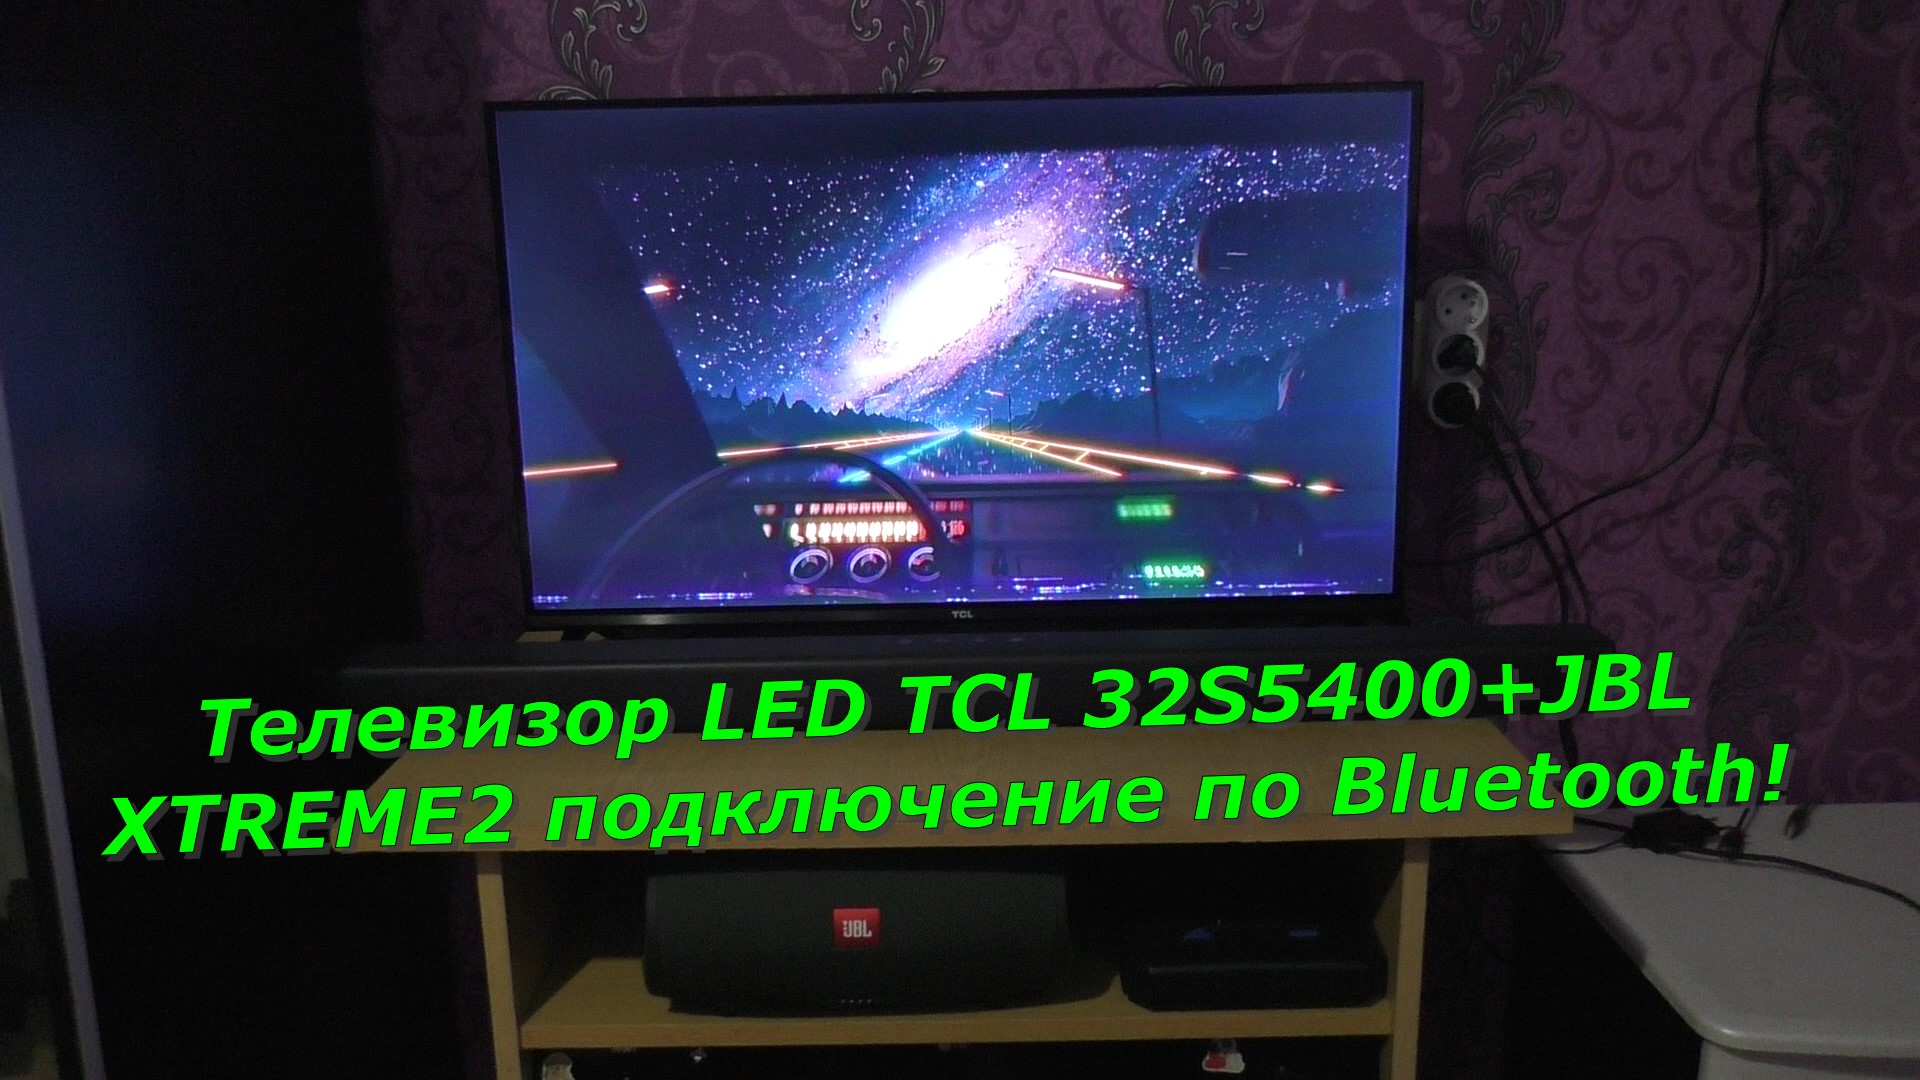 Телевизор LED TCL 32S5400+JBL XTREME2 подключение по Bluetooth!?